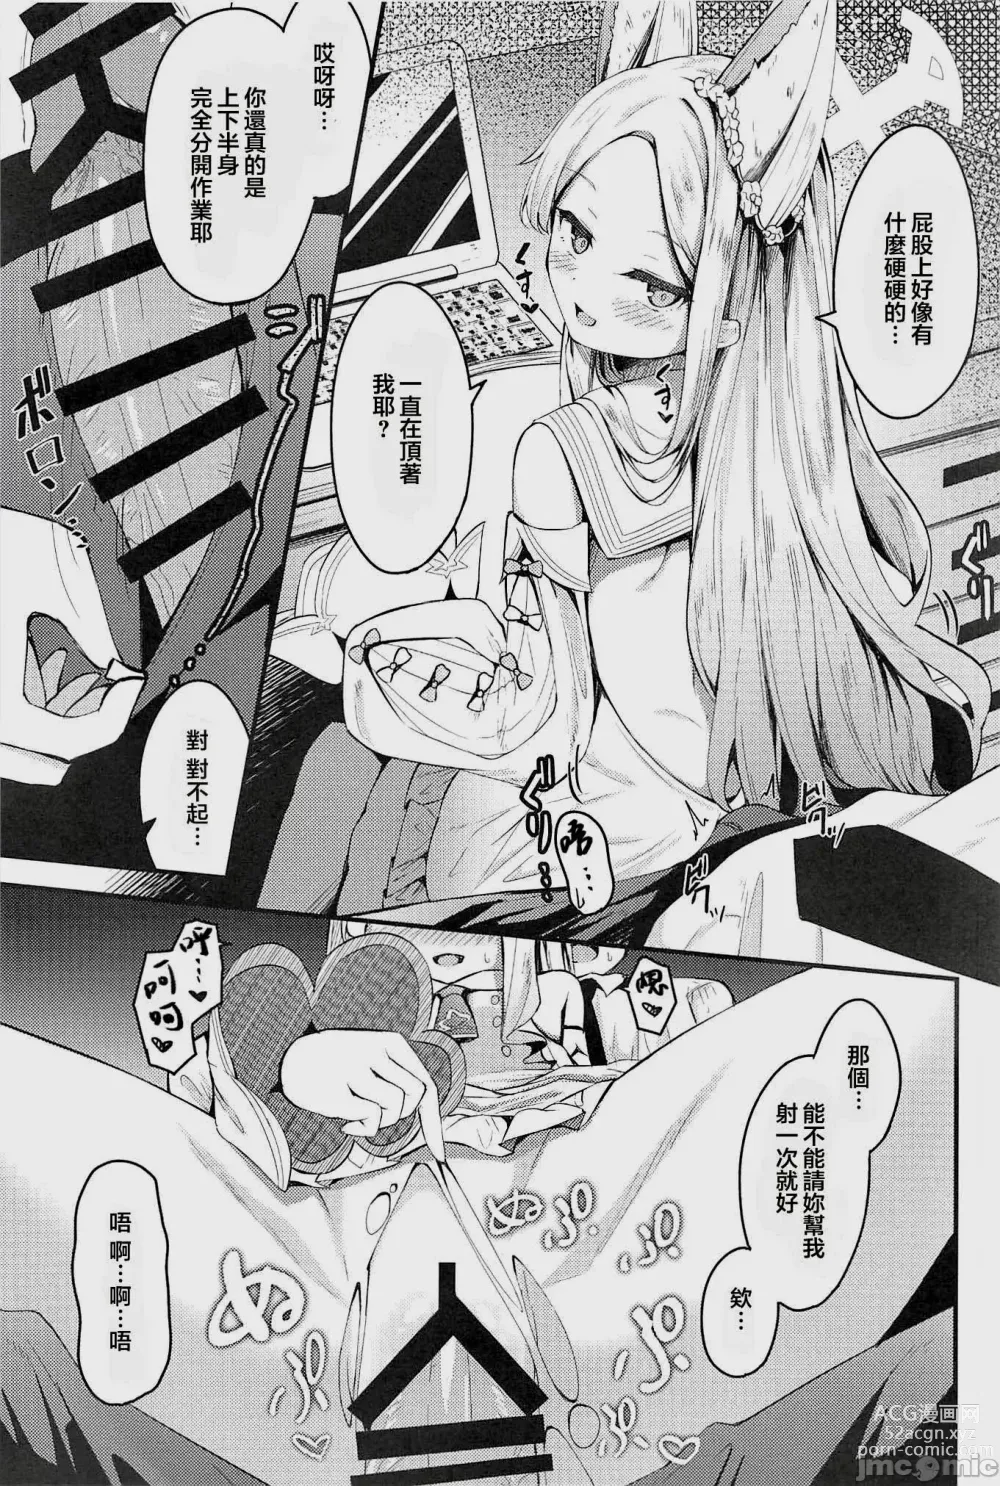 Page 6 of doujinshi Seia ni Hitorijime Sareru Natsu